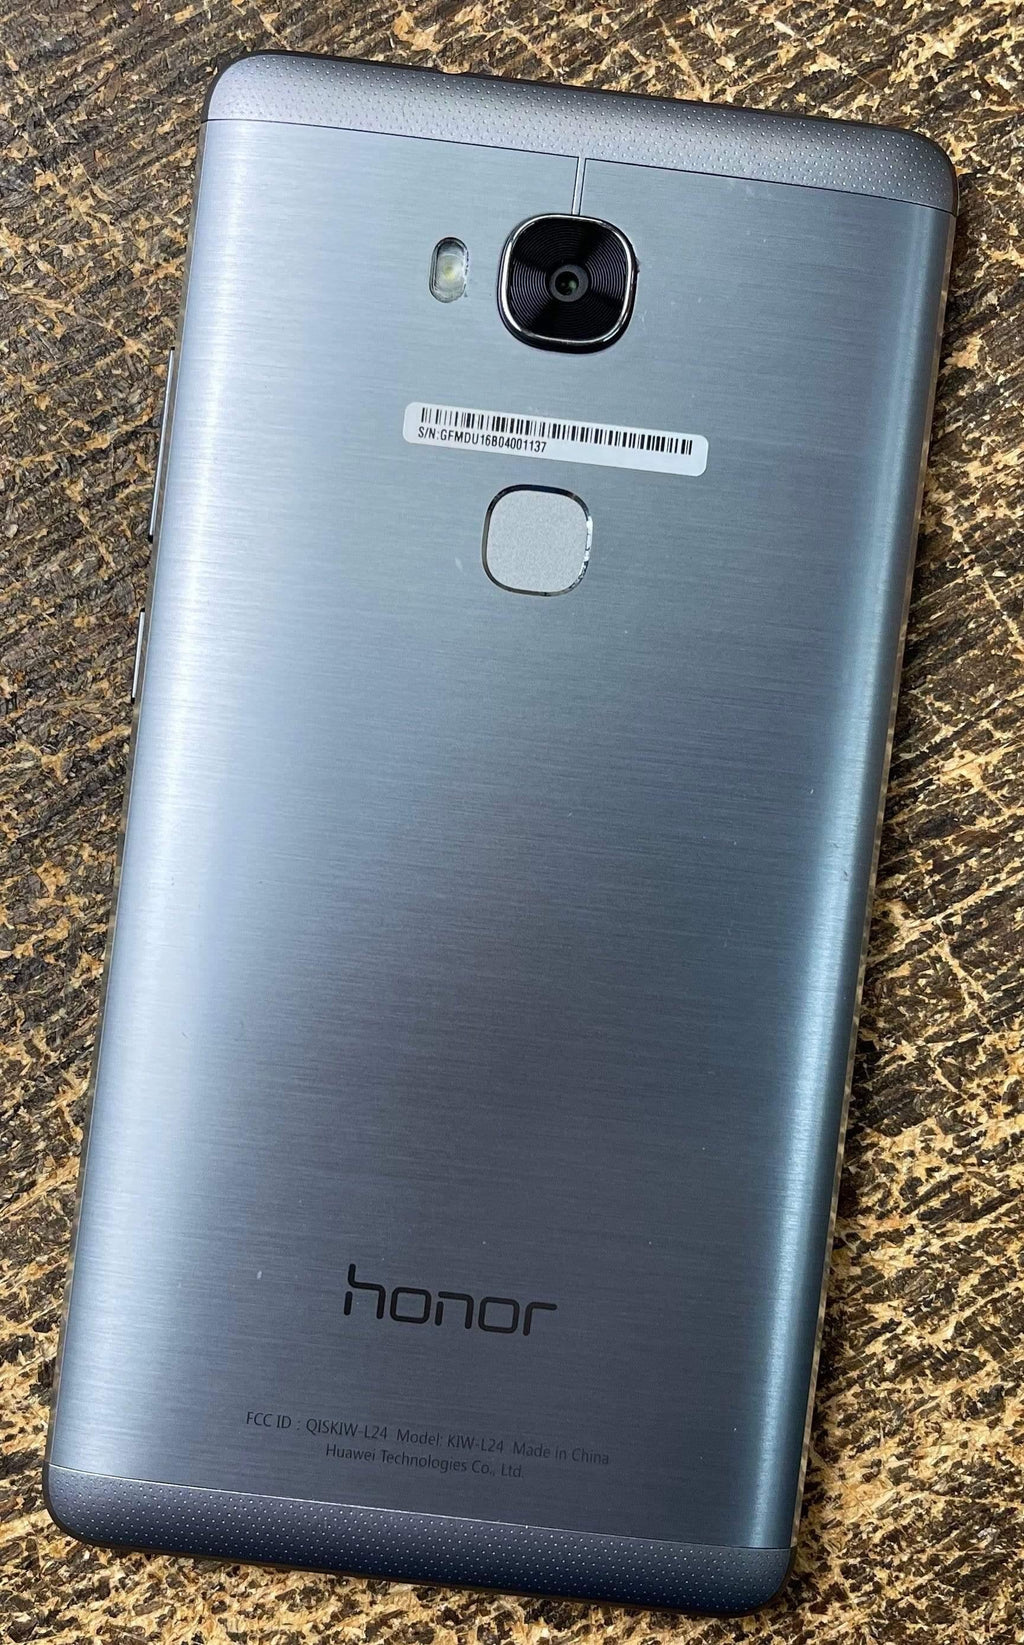 Harmonie badminton eigenaar Huawei Honor 5X 4G LTE Android 5.5" Dual-SIM 16GB Unlocked Smartphone